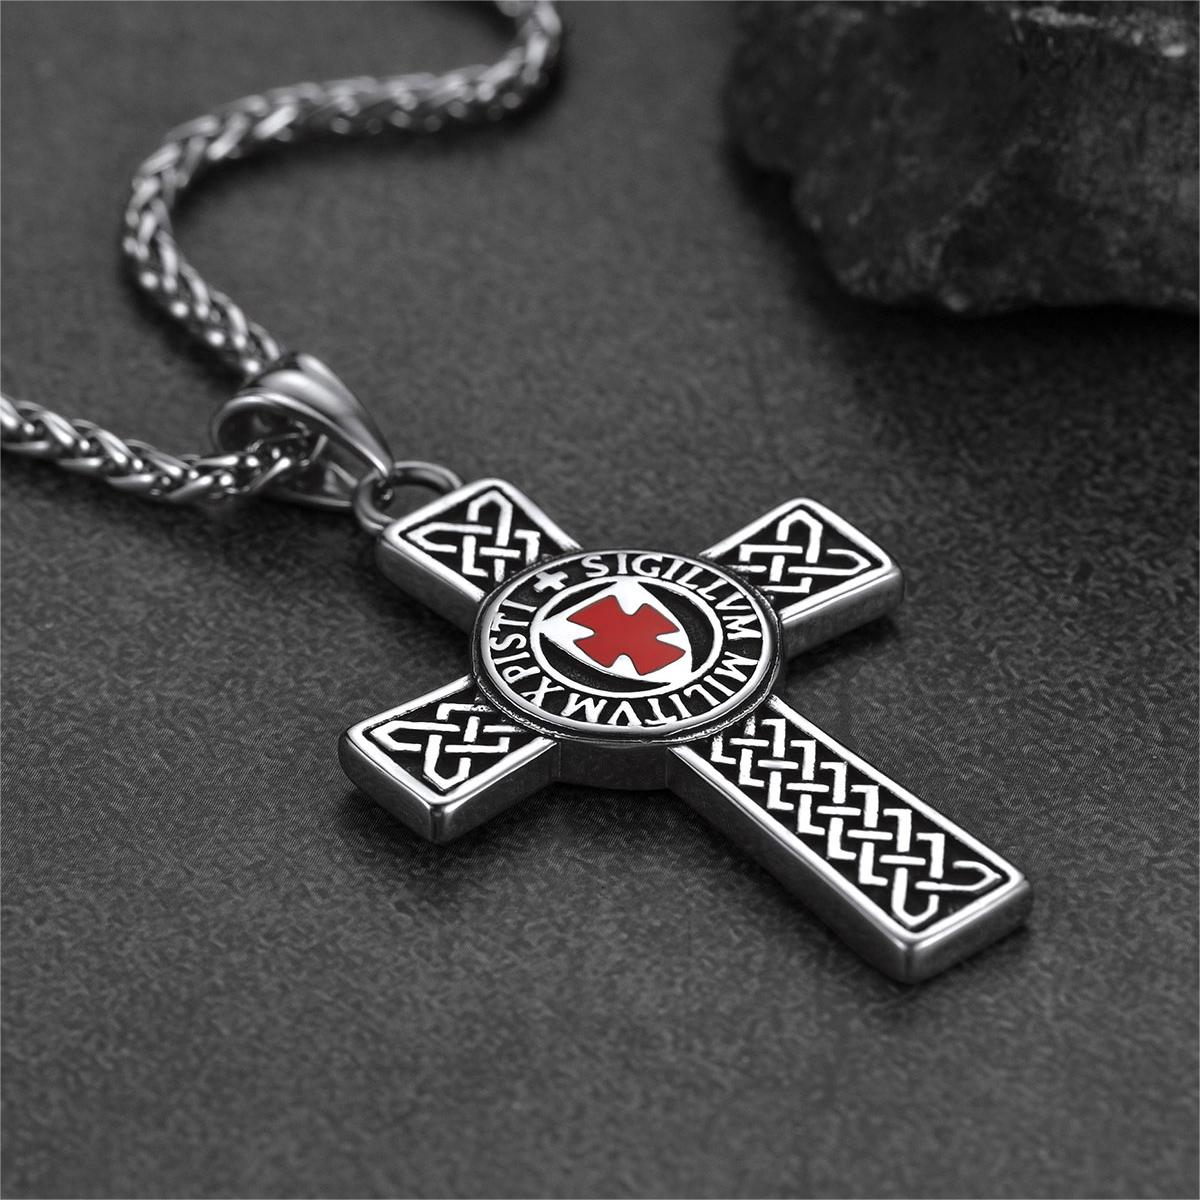 FaithHeart Knights Templar Cross Pendant Necklace For Men – FaithHeart ...